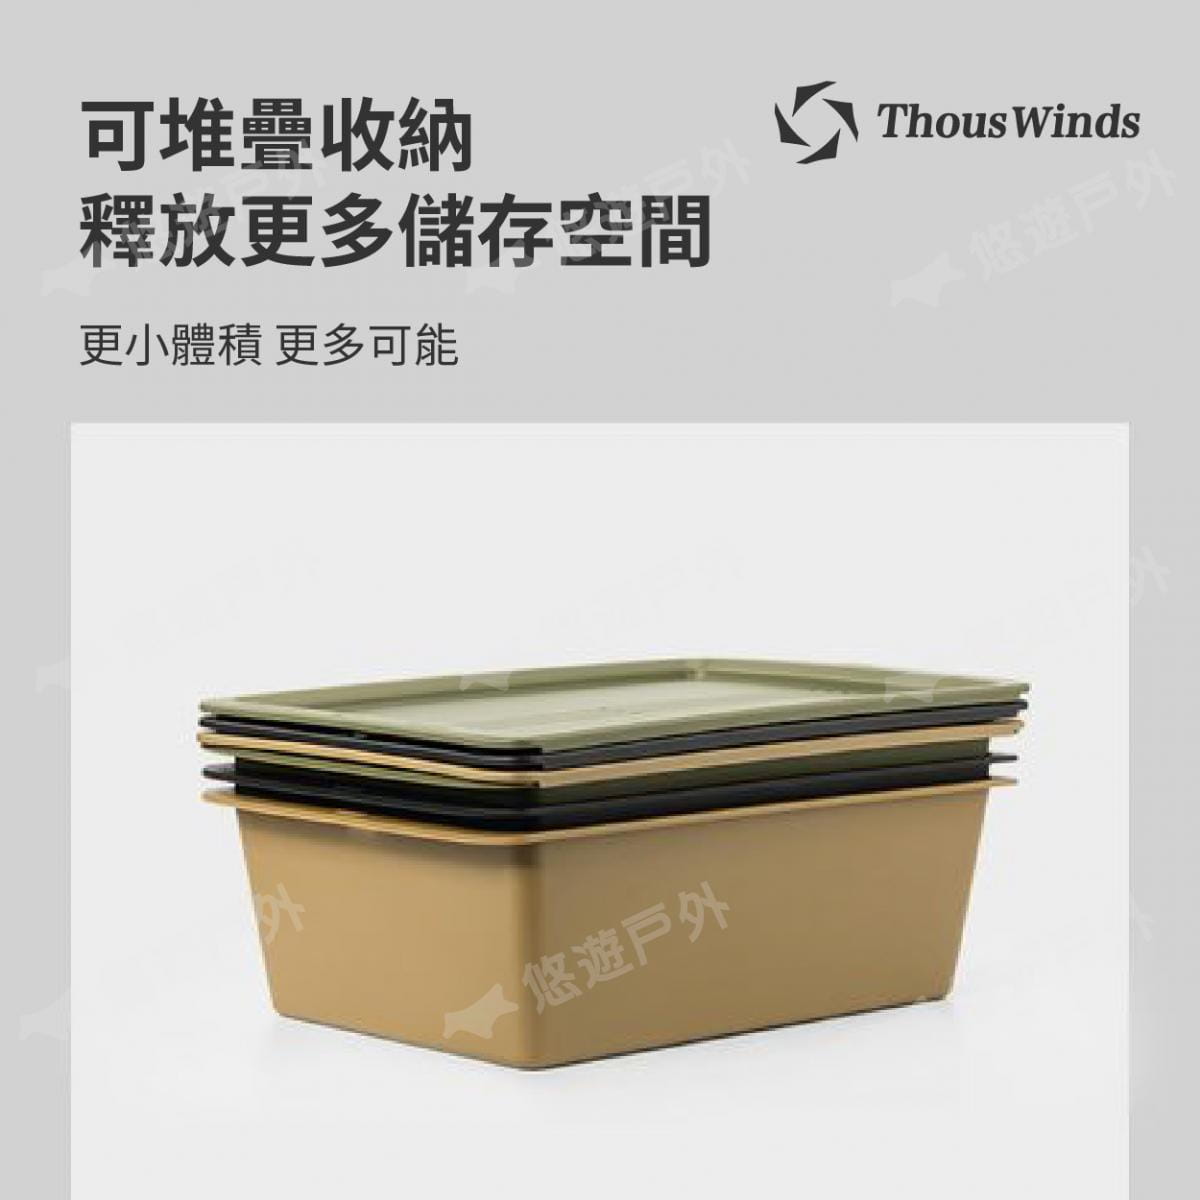 【Thous Winds】 一單元收納茶盒 三色 TW-IGT09B/G/K 悠遊戶外 7